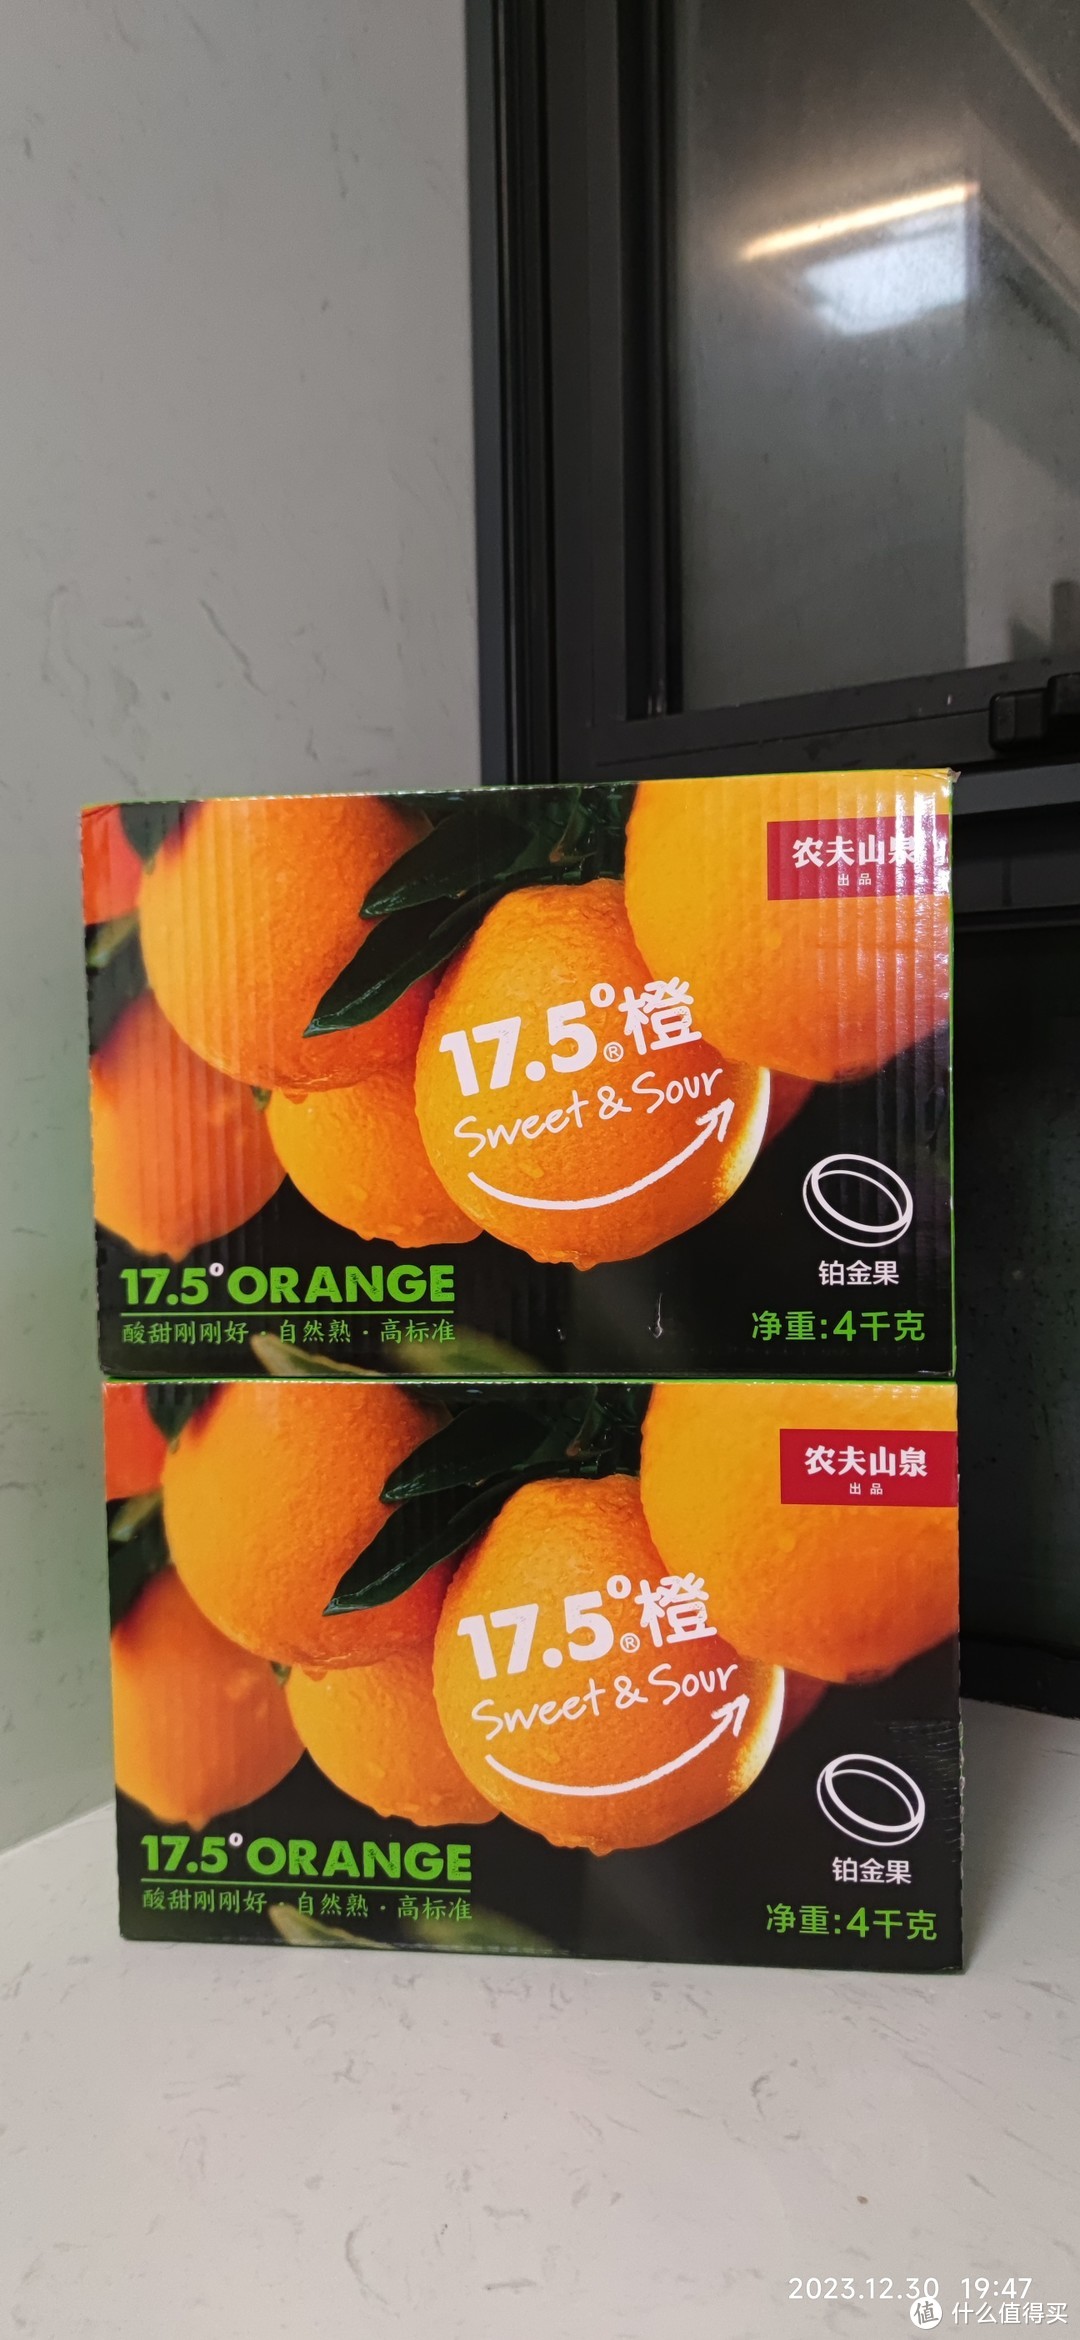 前天40元一箱的农夫山泉橙子大家都买到了吗？